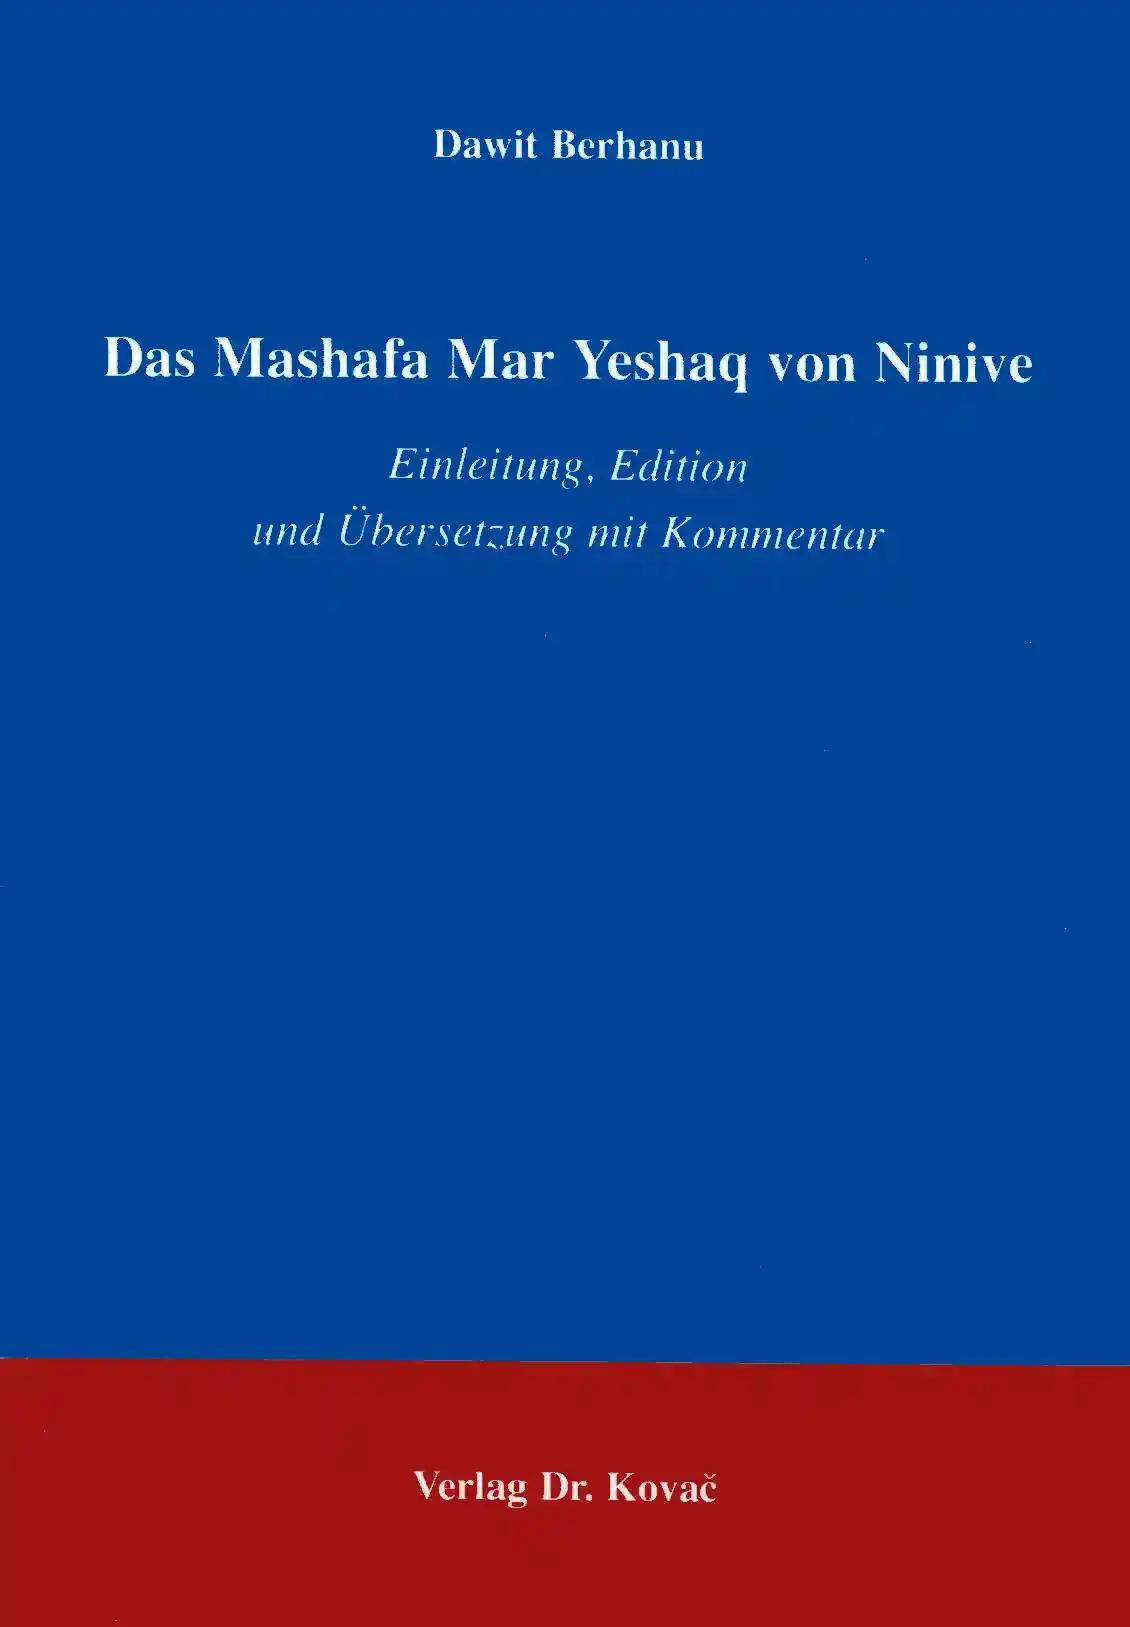 Das Mashafa Mar Yeshaq von Ninive, Einleitung, Edition und Ãœbersetzung mit Kommentar - Dawit Berhanu